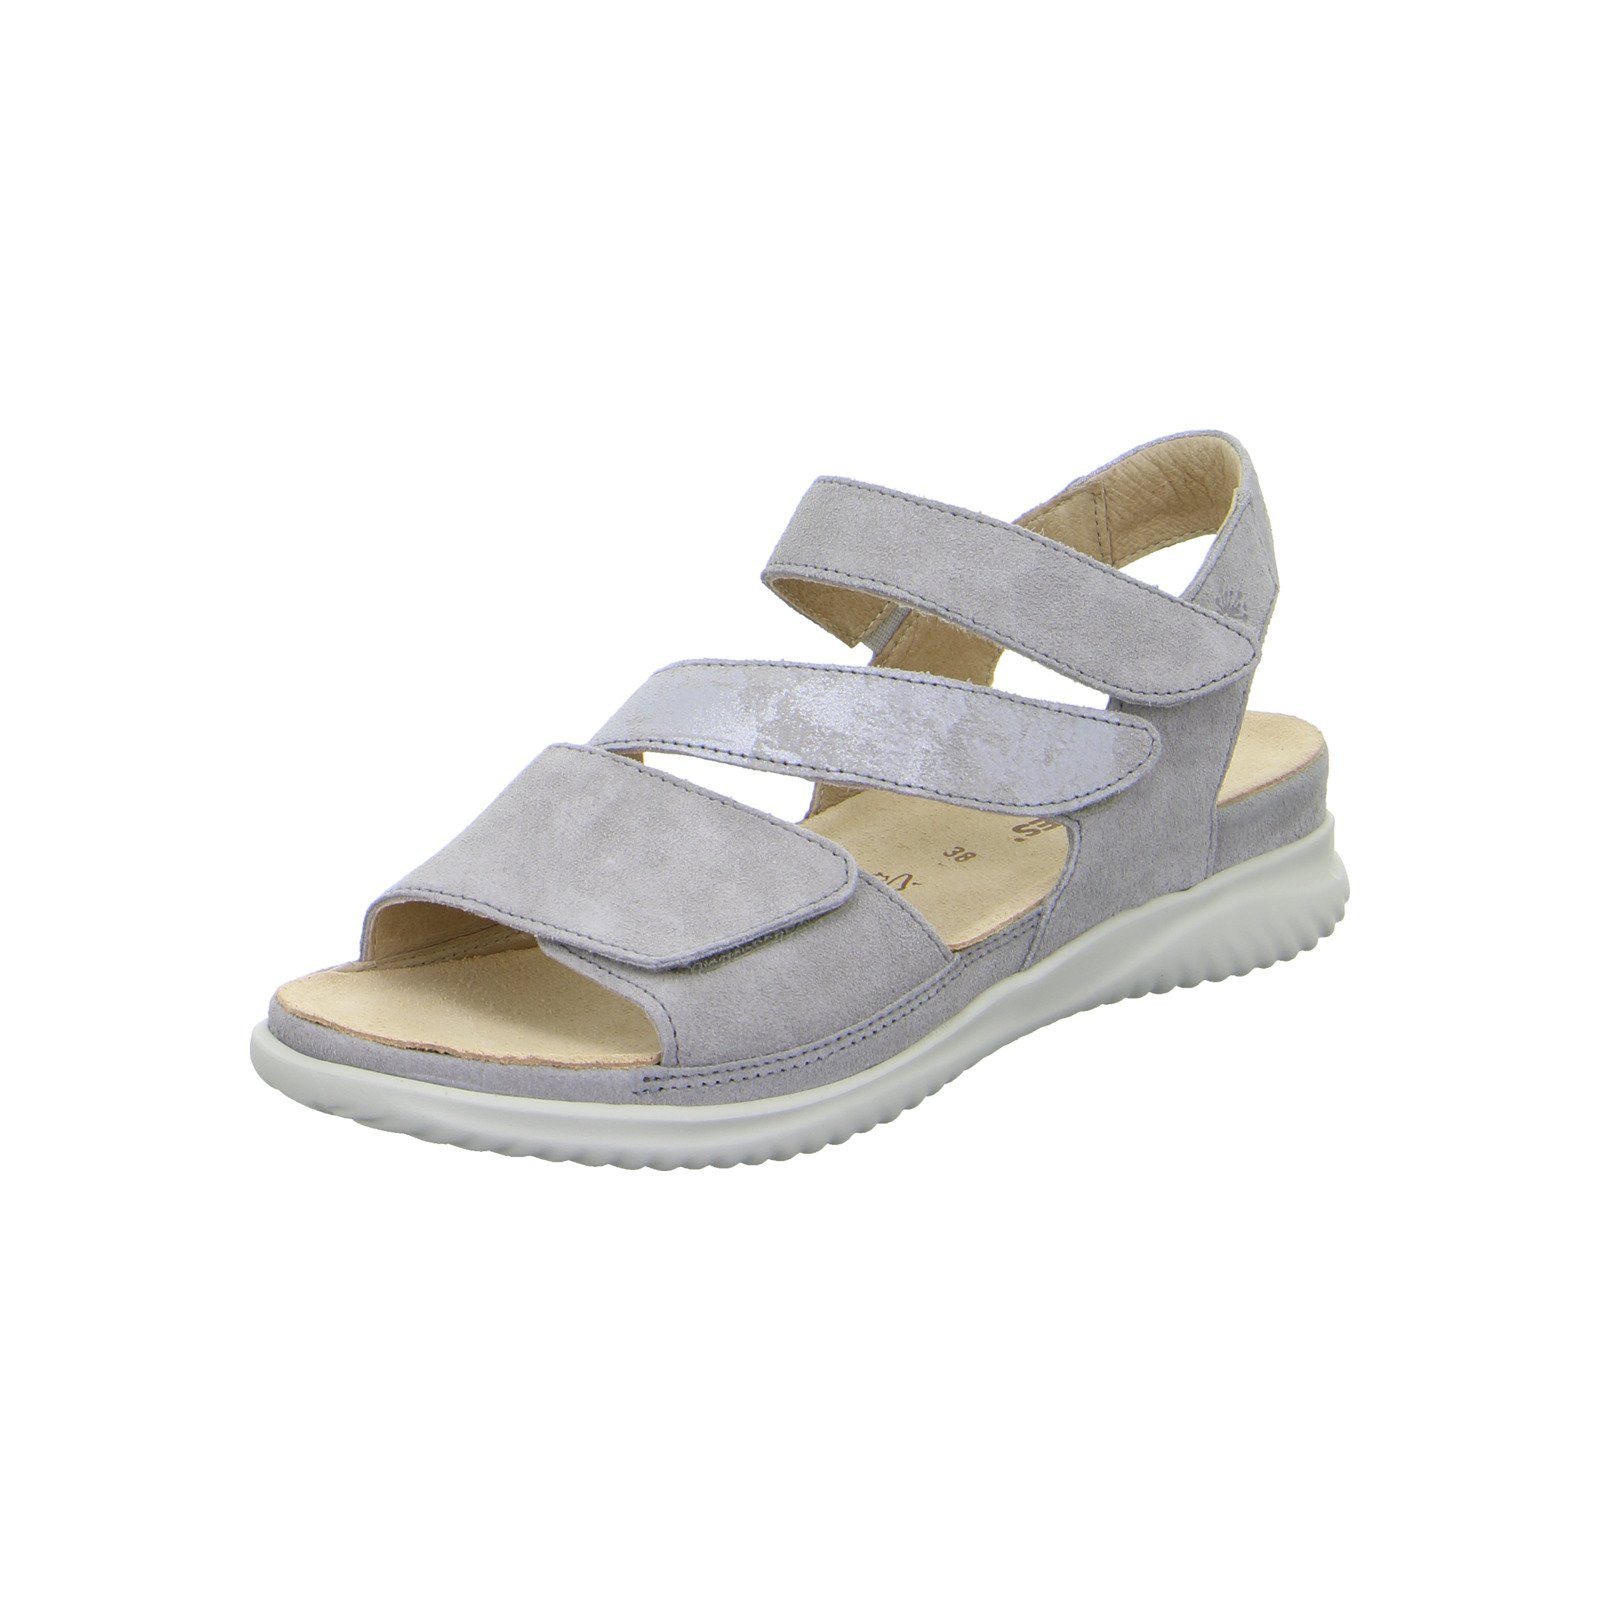 Hartjes Breeze - Damen Schuhe Sandalette grau